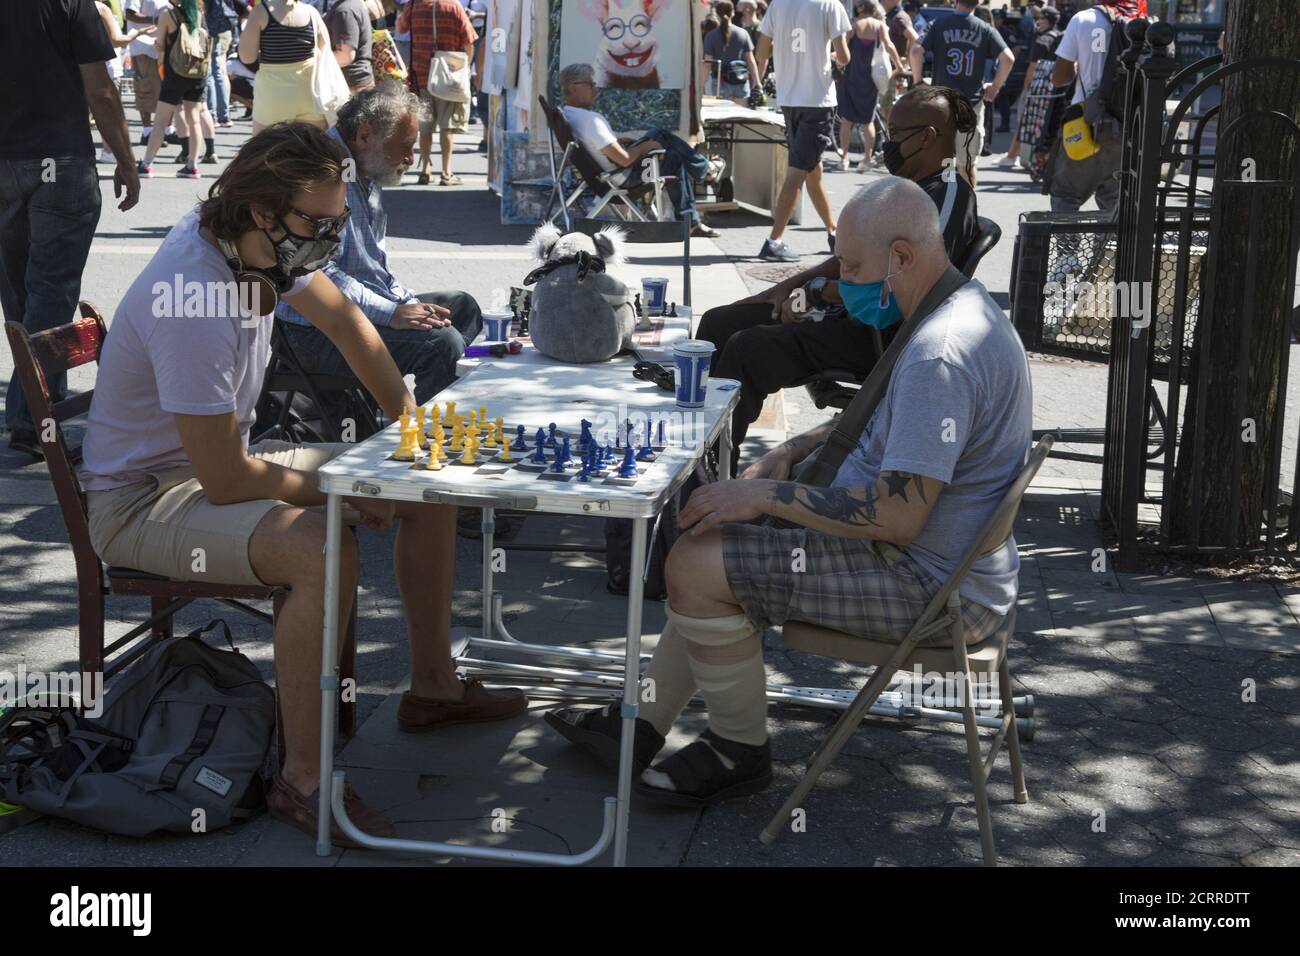 Schachspiele bieten ziemlich gute soziale Distanzierung während der Covid-19 Pandemie. Schachspiele, Union Square, New York City. Stockfoto